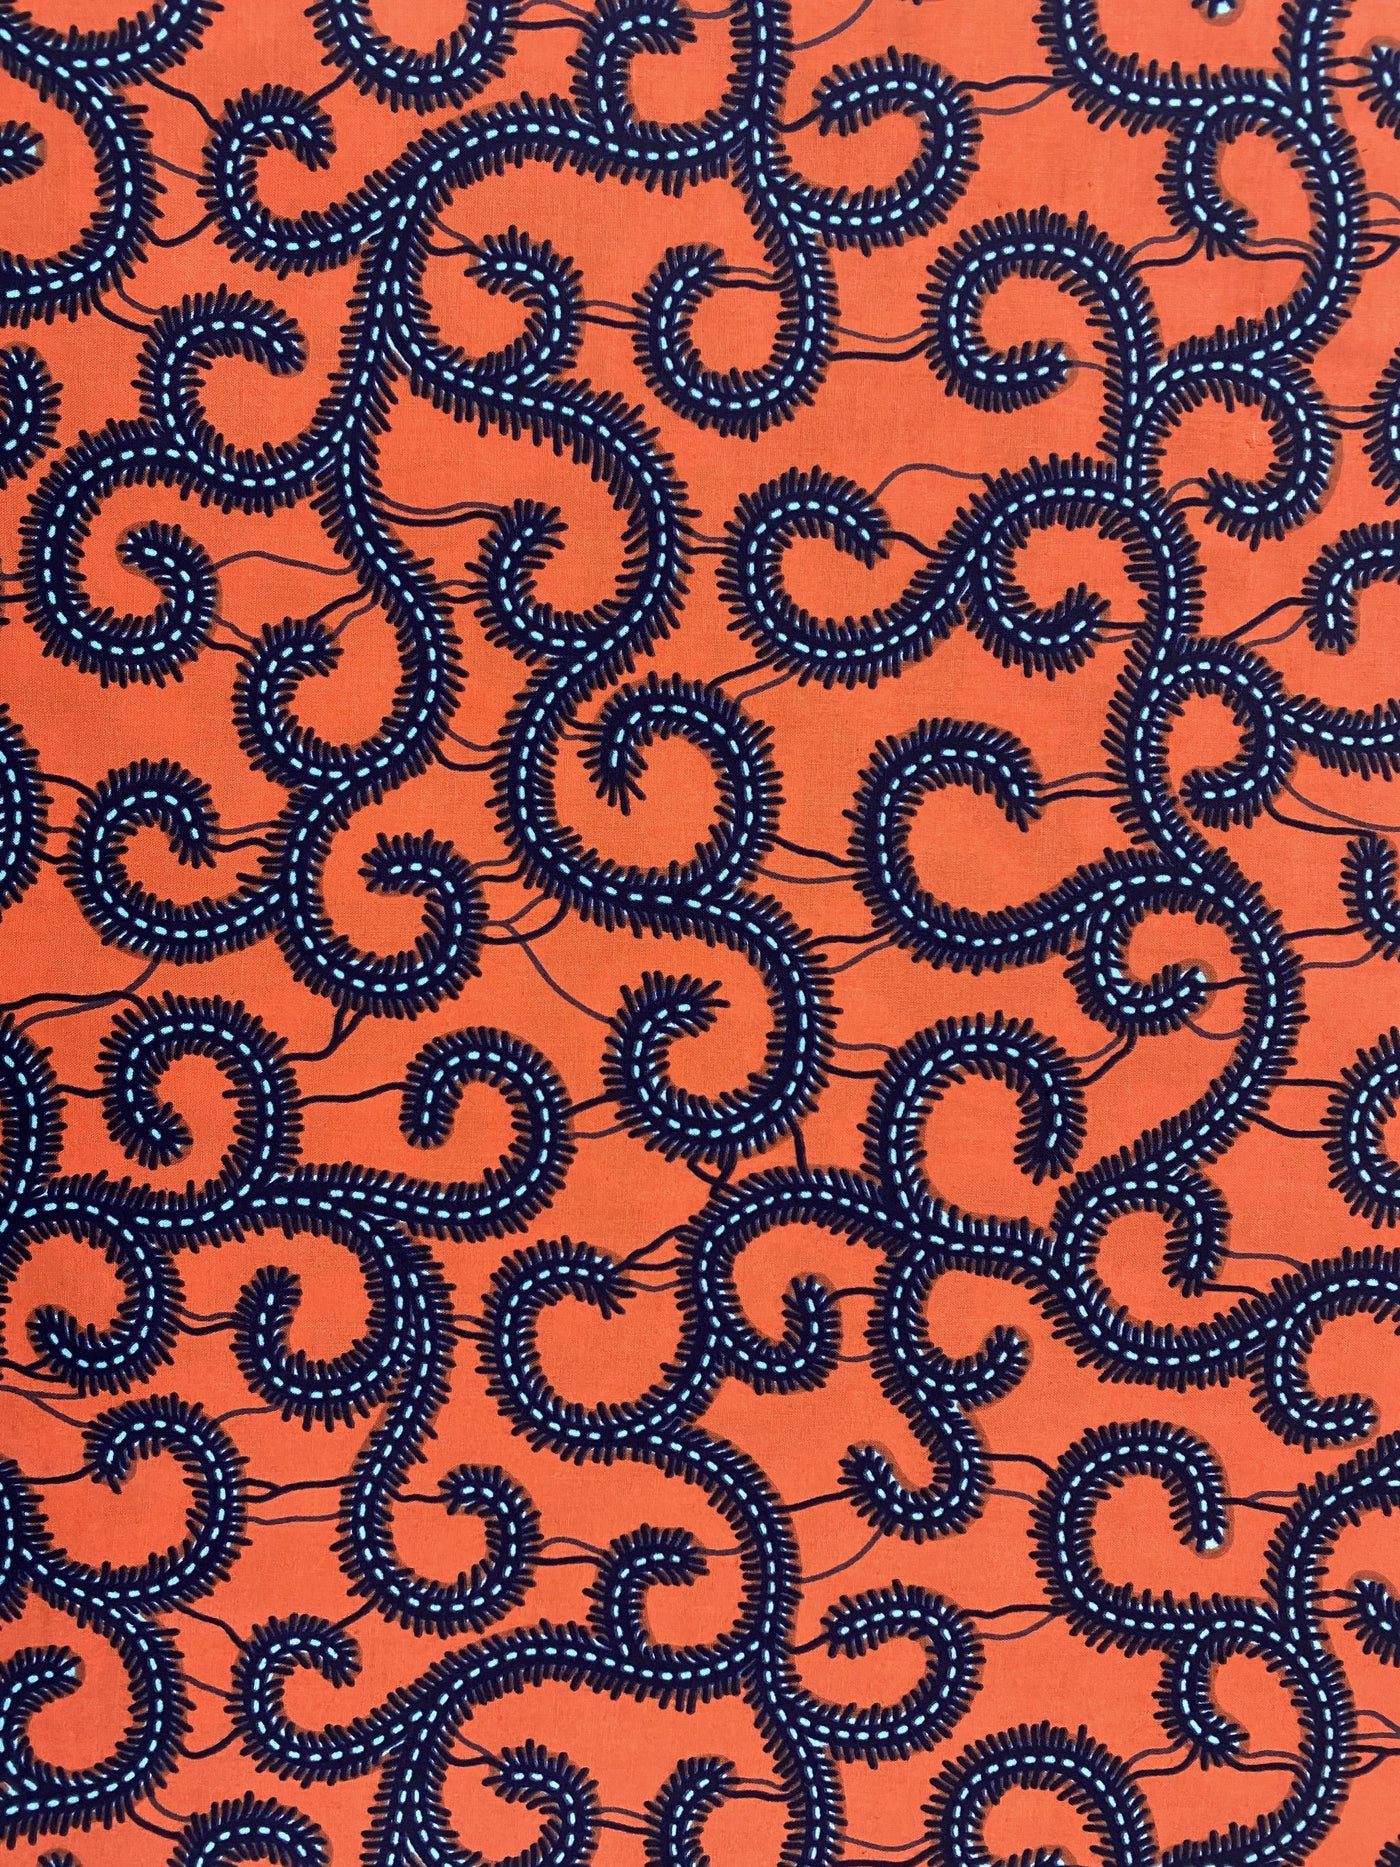 Ankara Fabric - H606109